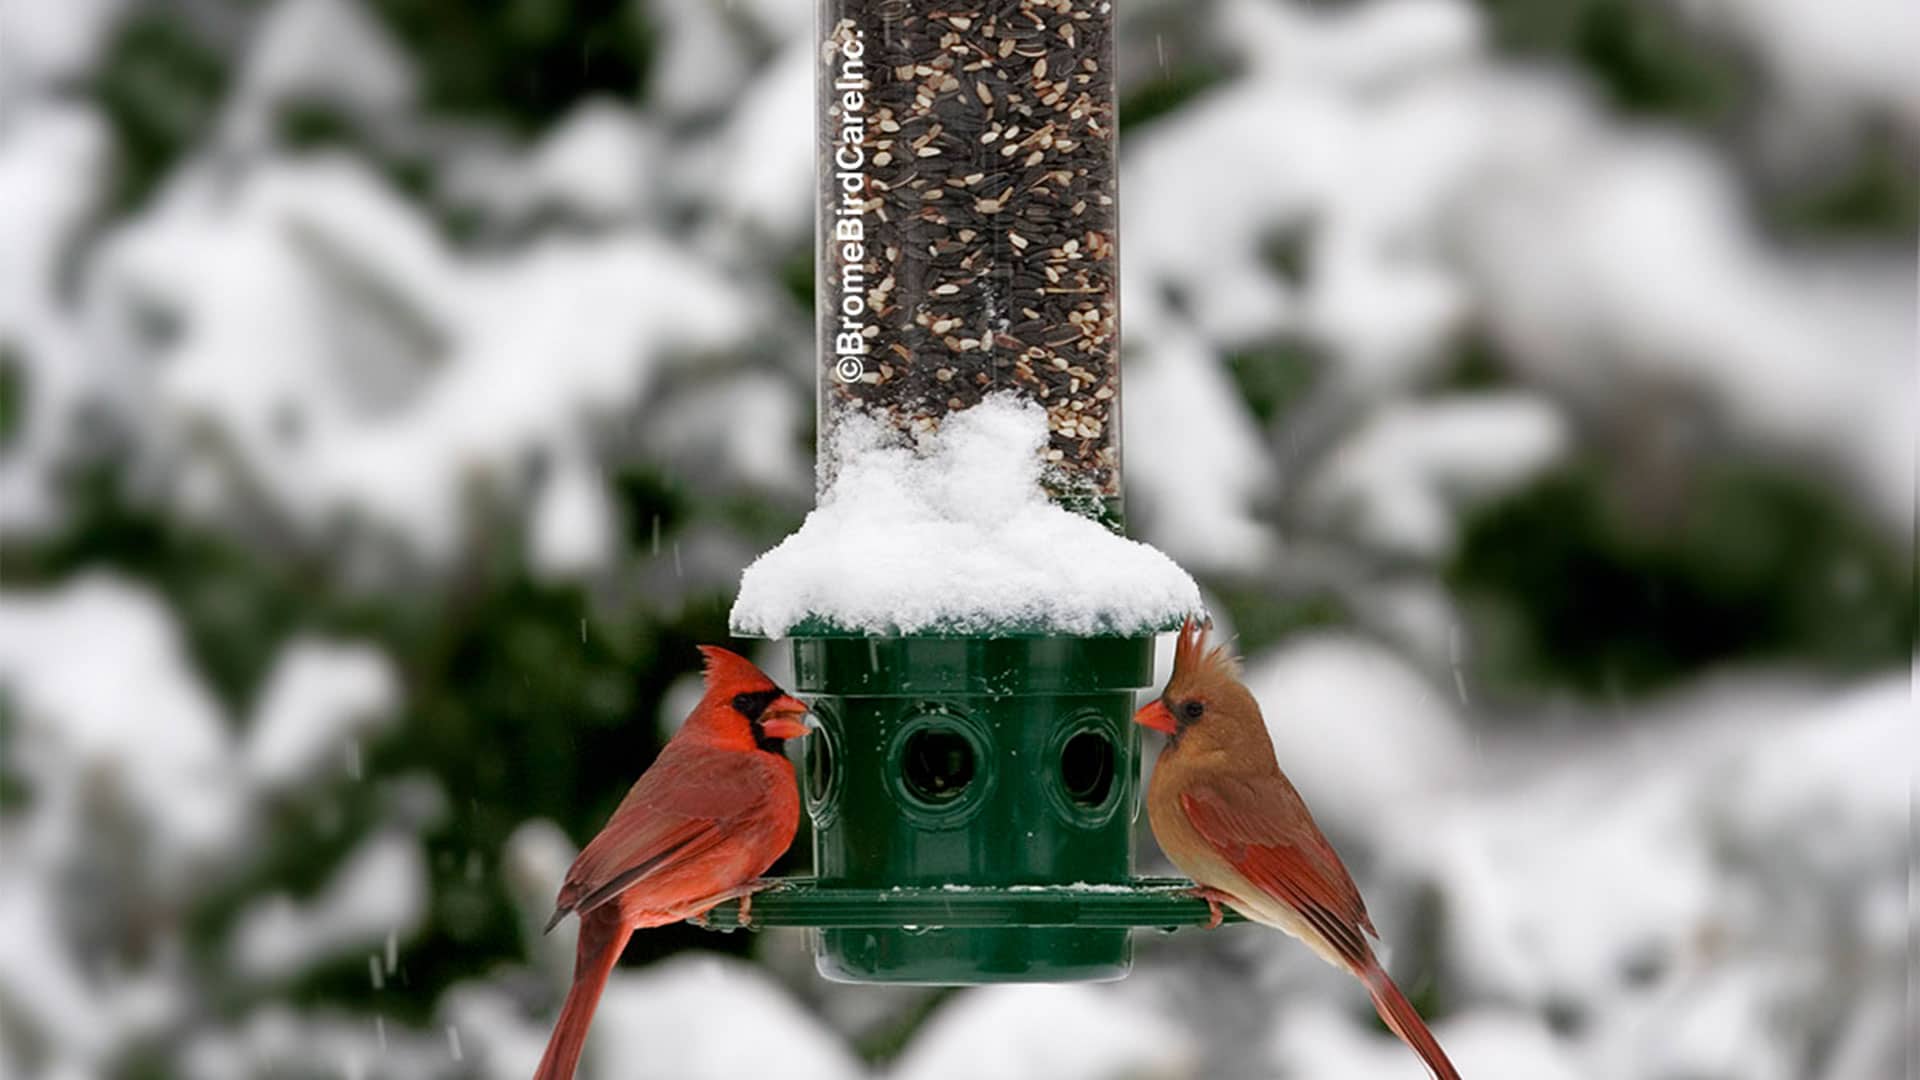 Rendre sa cour accueillante pour nourrir les oiseaux en hiver - Du jardin  dans ma vie